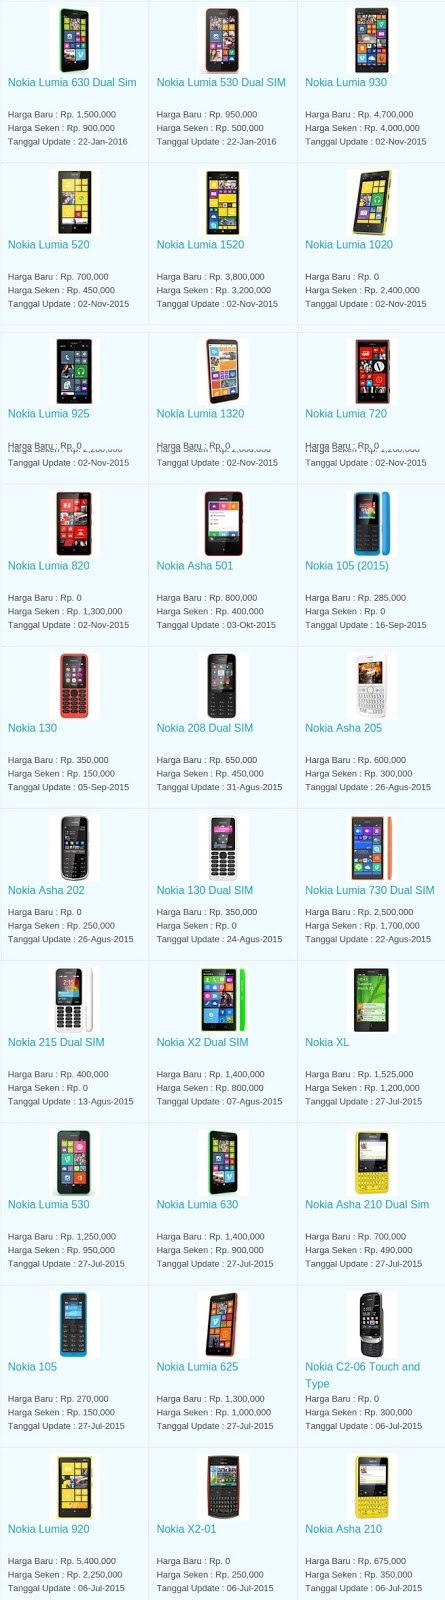 Daftar Harga Hp Terbaru Nokia Juli 2016